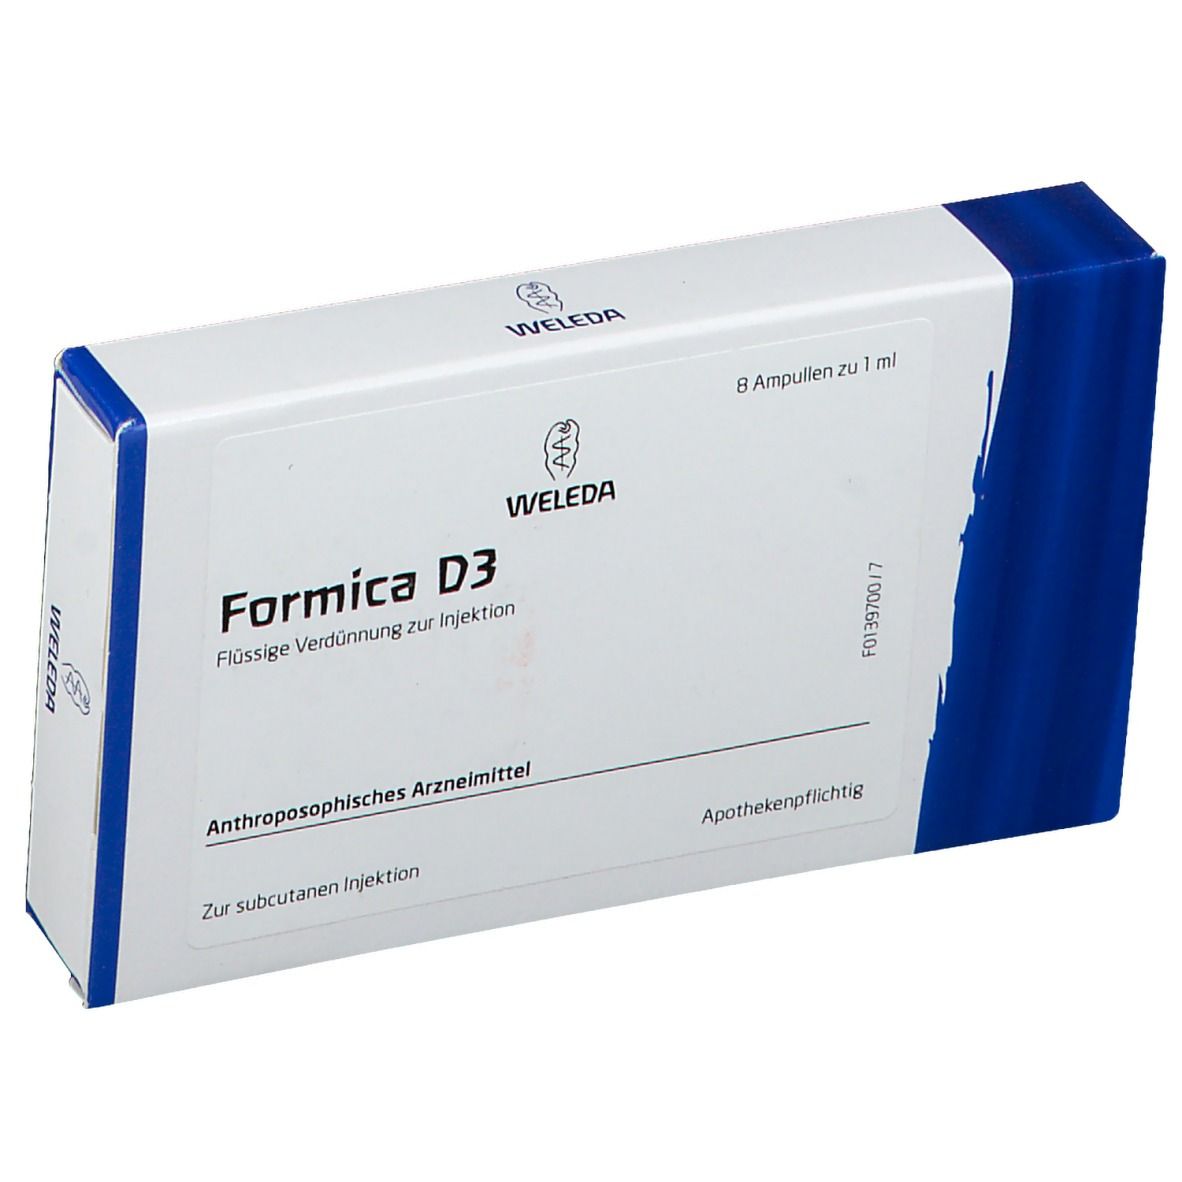 Formica D3